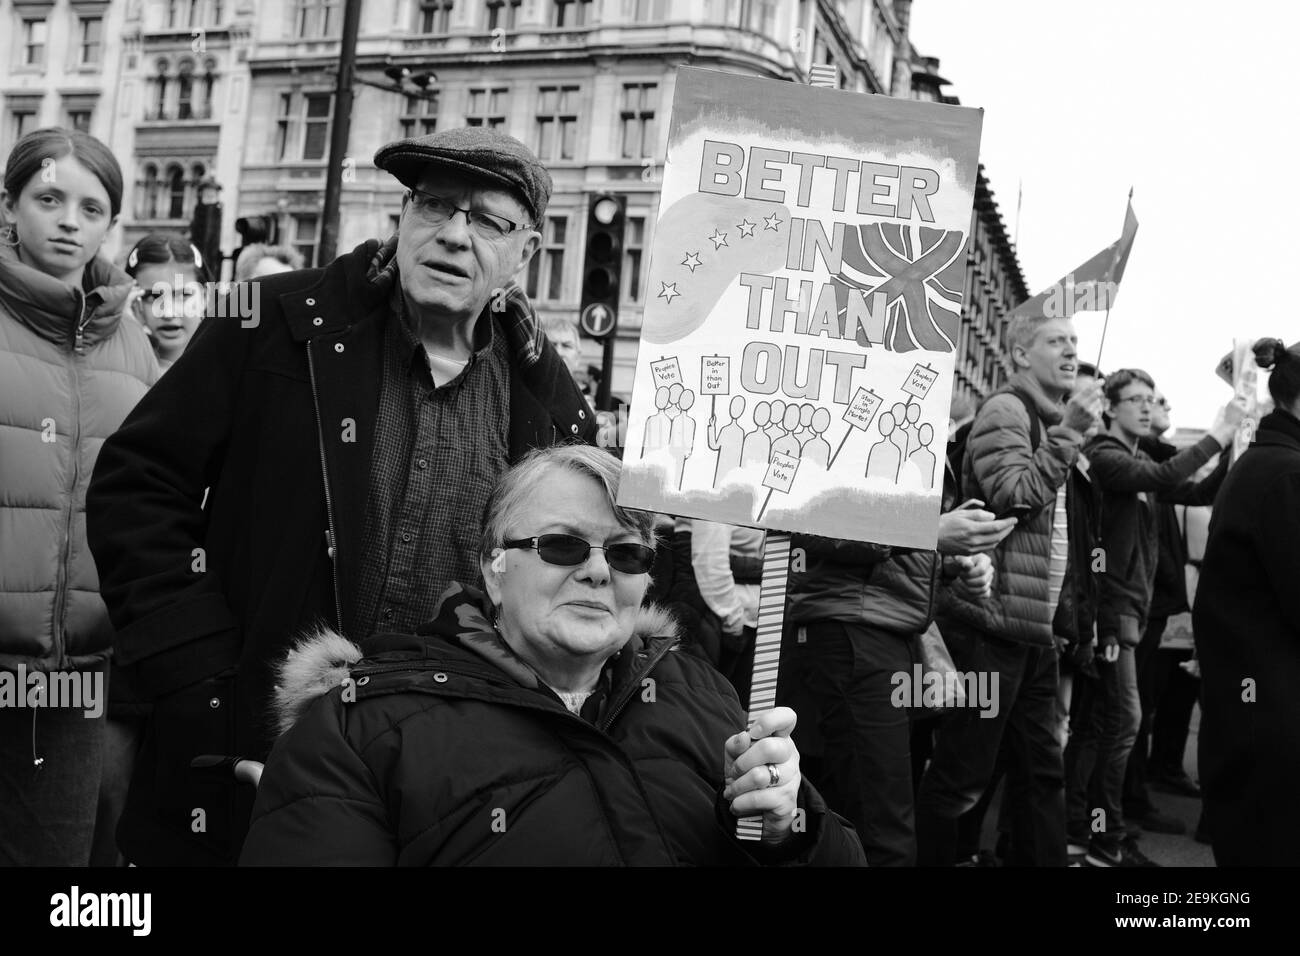 LONDRES - 2019: Des manifestants contre la sortie de l'Union européenne en dehors du Parlement à Londres Banque D'Images